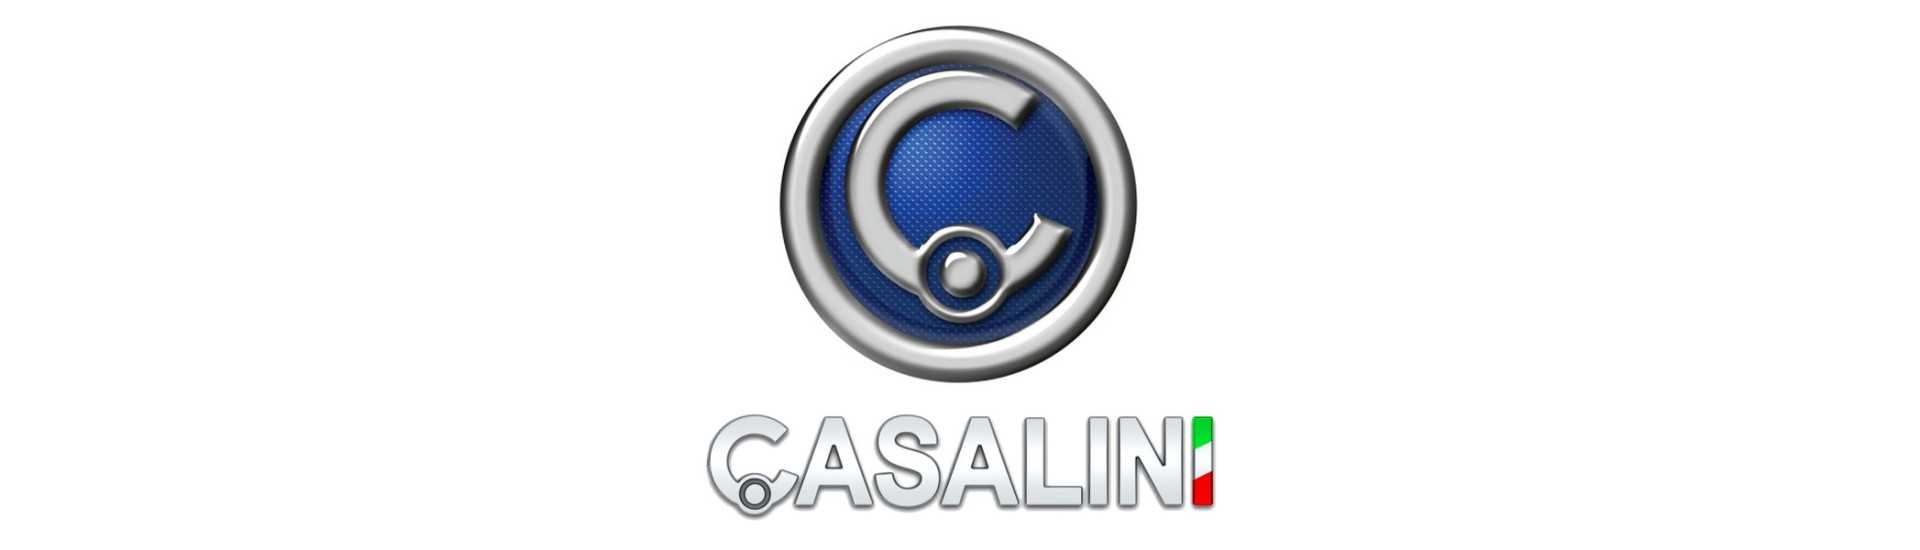 Motor de limpiaparabrisas al mejor precio coche sin licencia Casalini